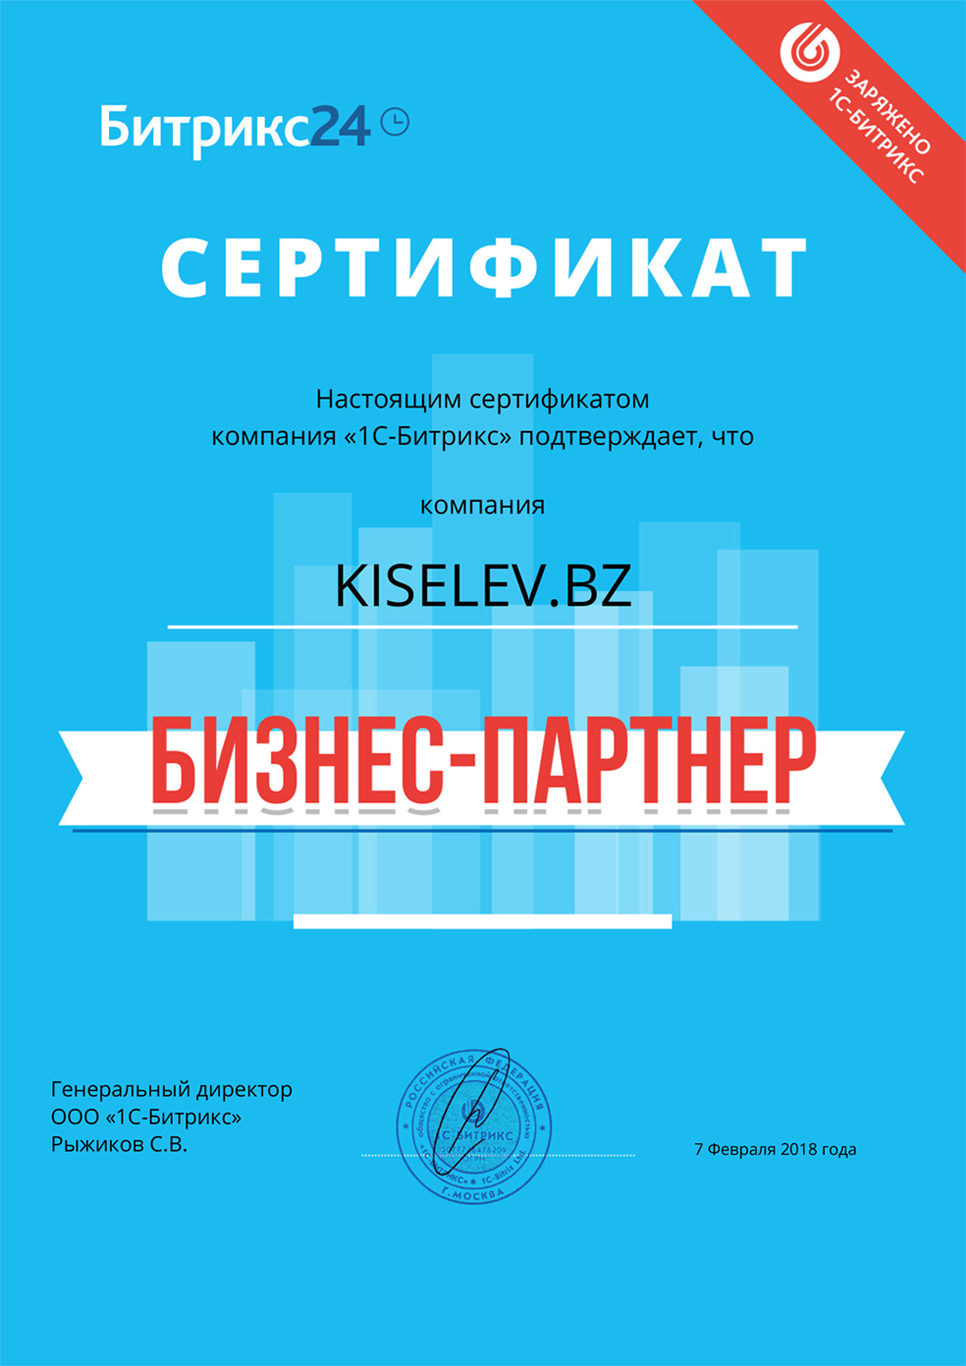 Сертификат партнёра по АМОСРМ в Тамбове